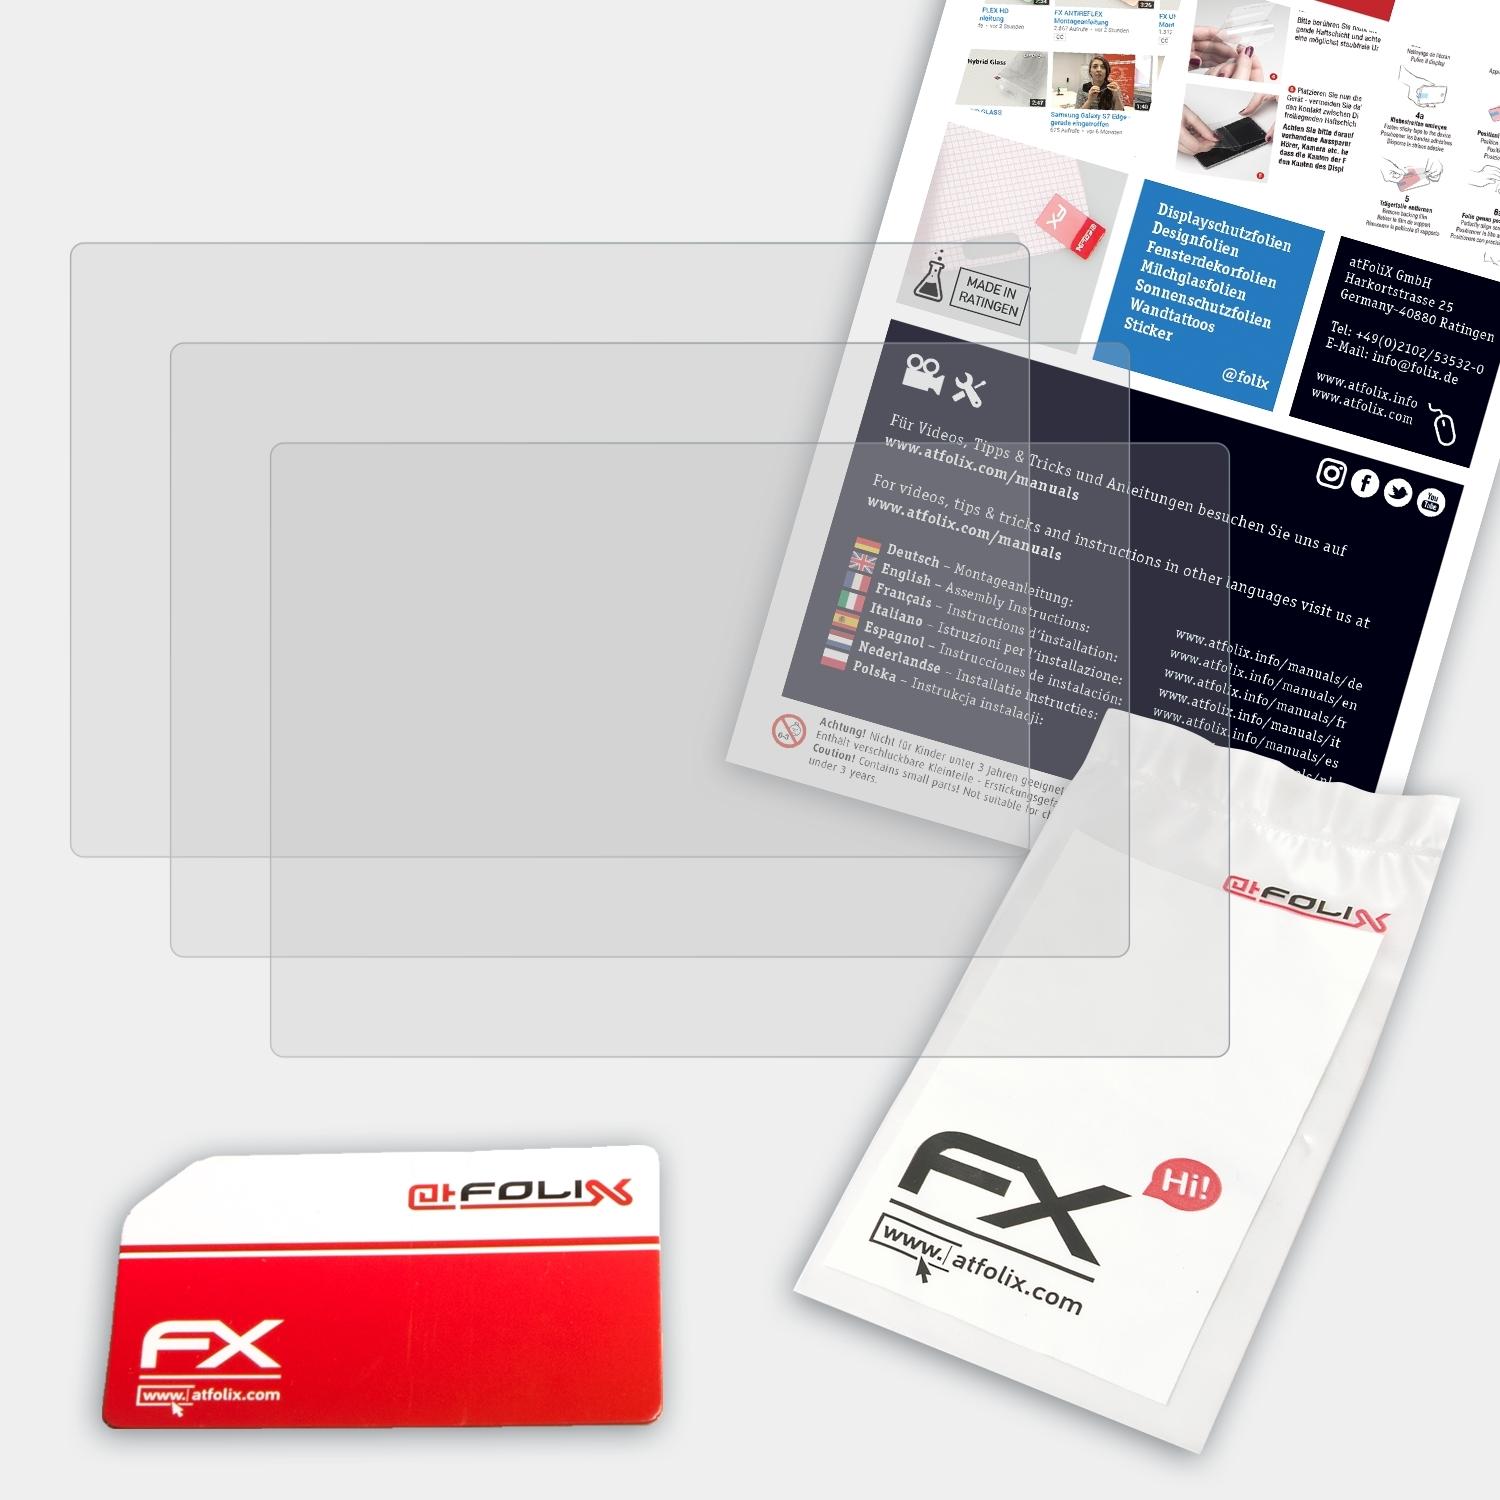 Panasonic FX-Antireflex ATFOLIX Displayschutz(für 3x DC-GX800) Lumix